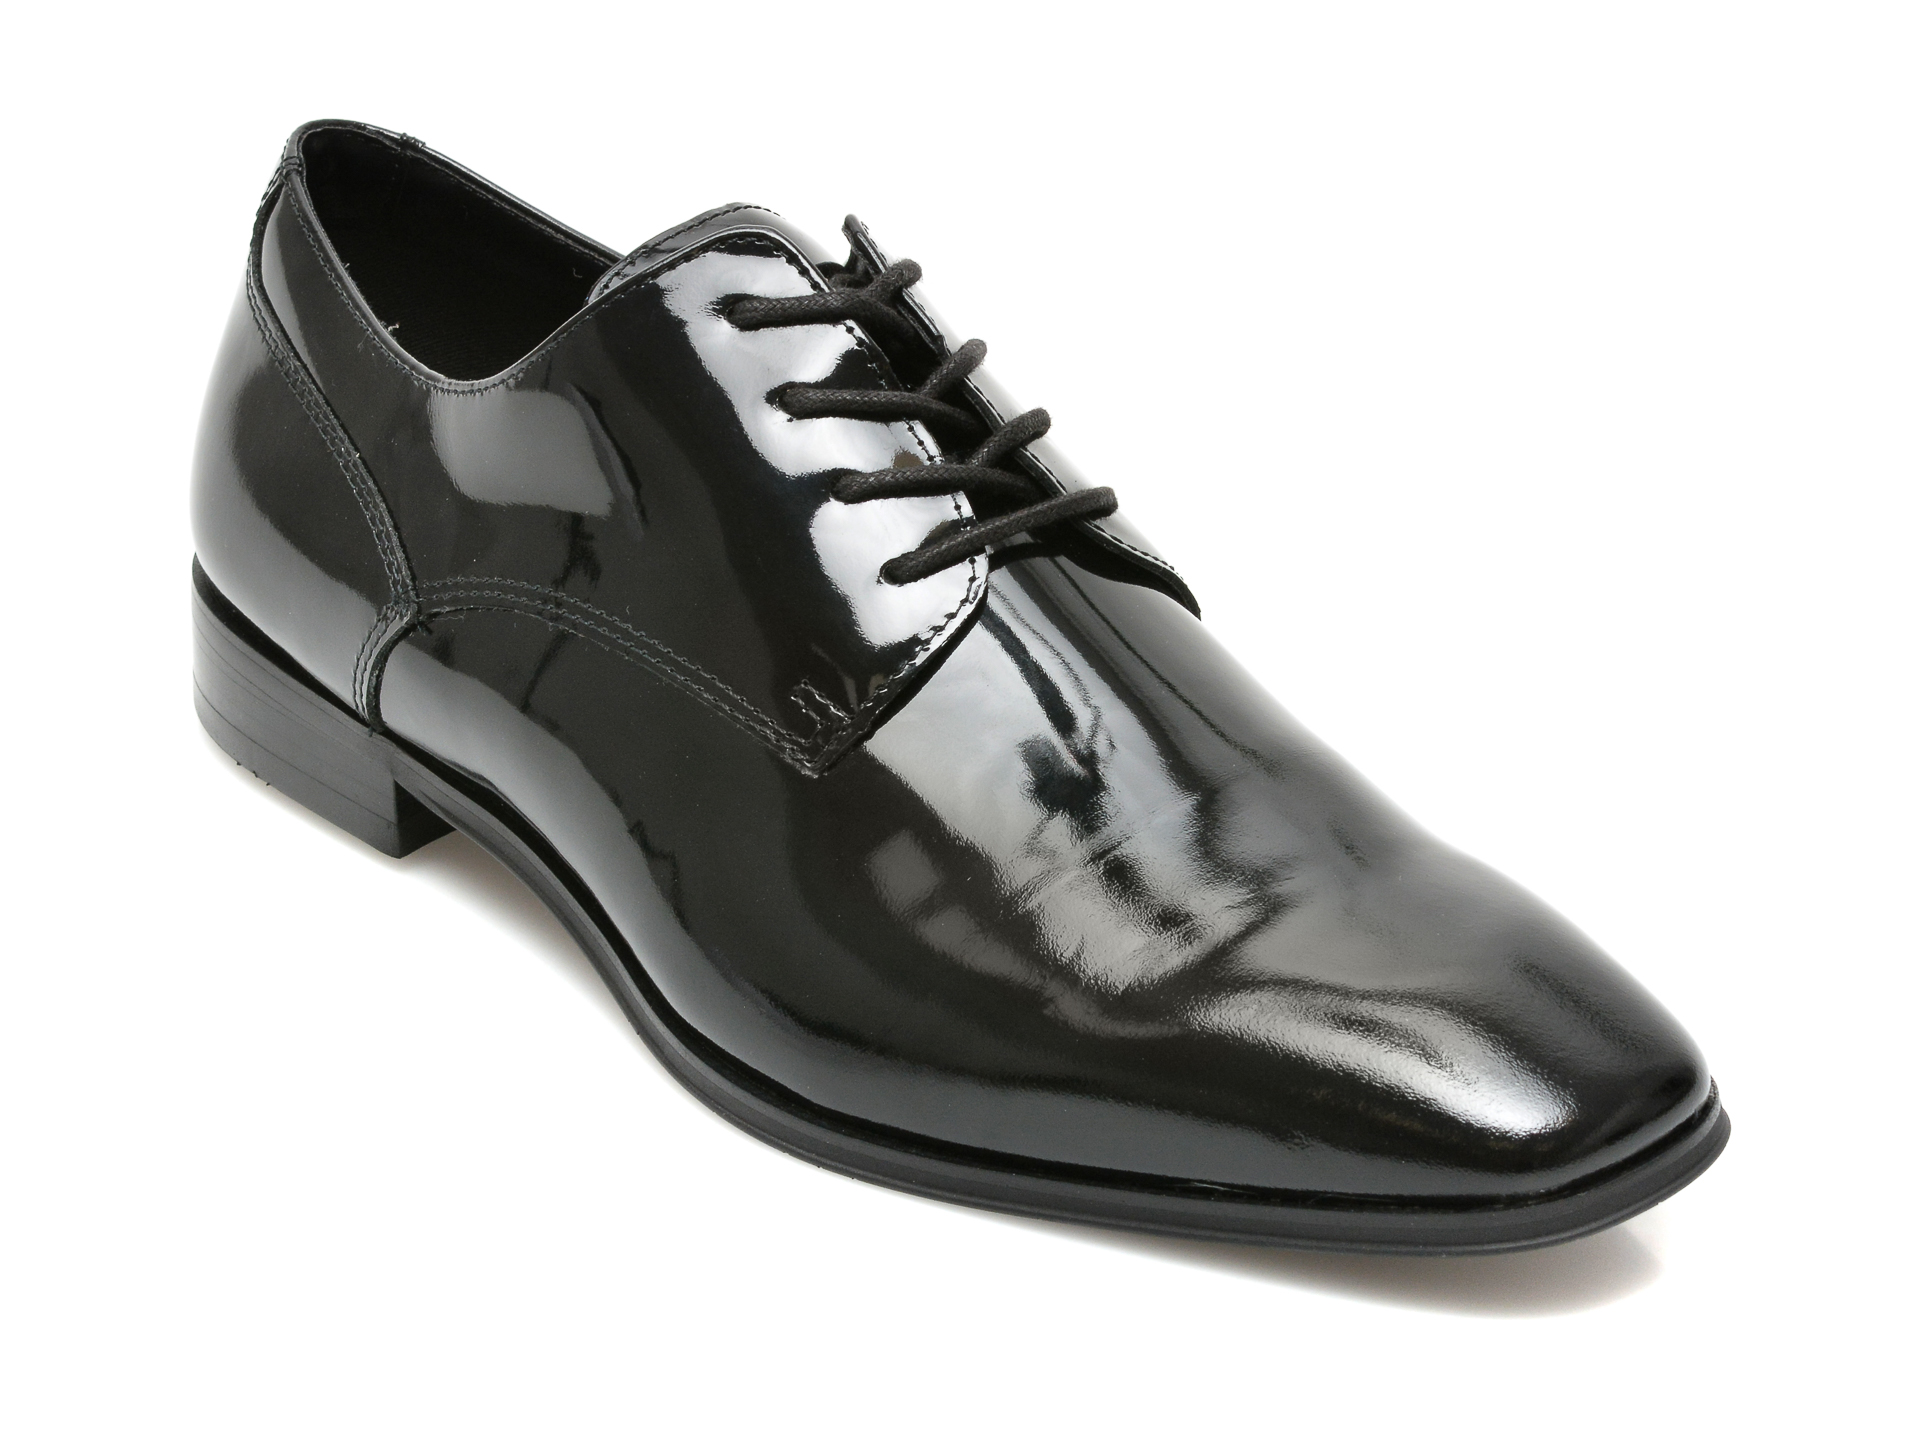 Pantofi ALDO negri, NOVVIO001, din piele naturala lacuita Aldo